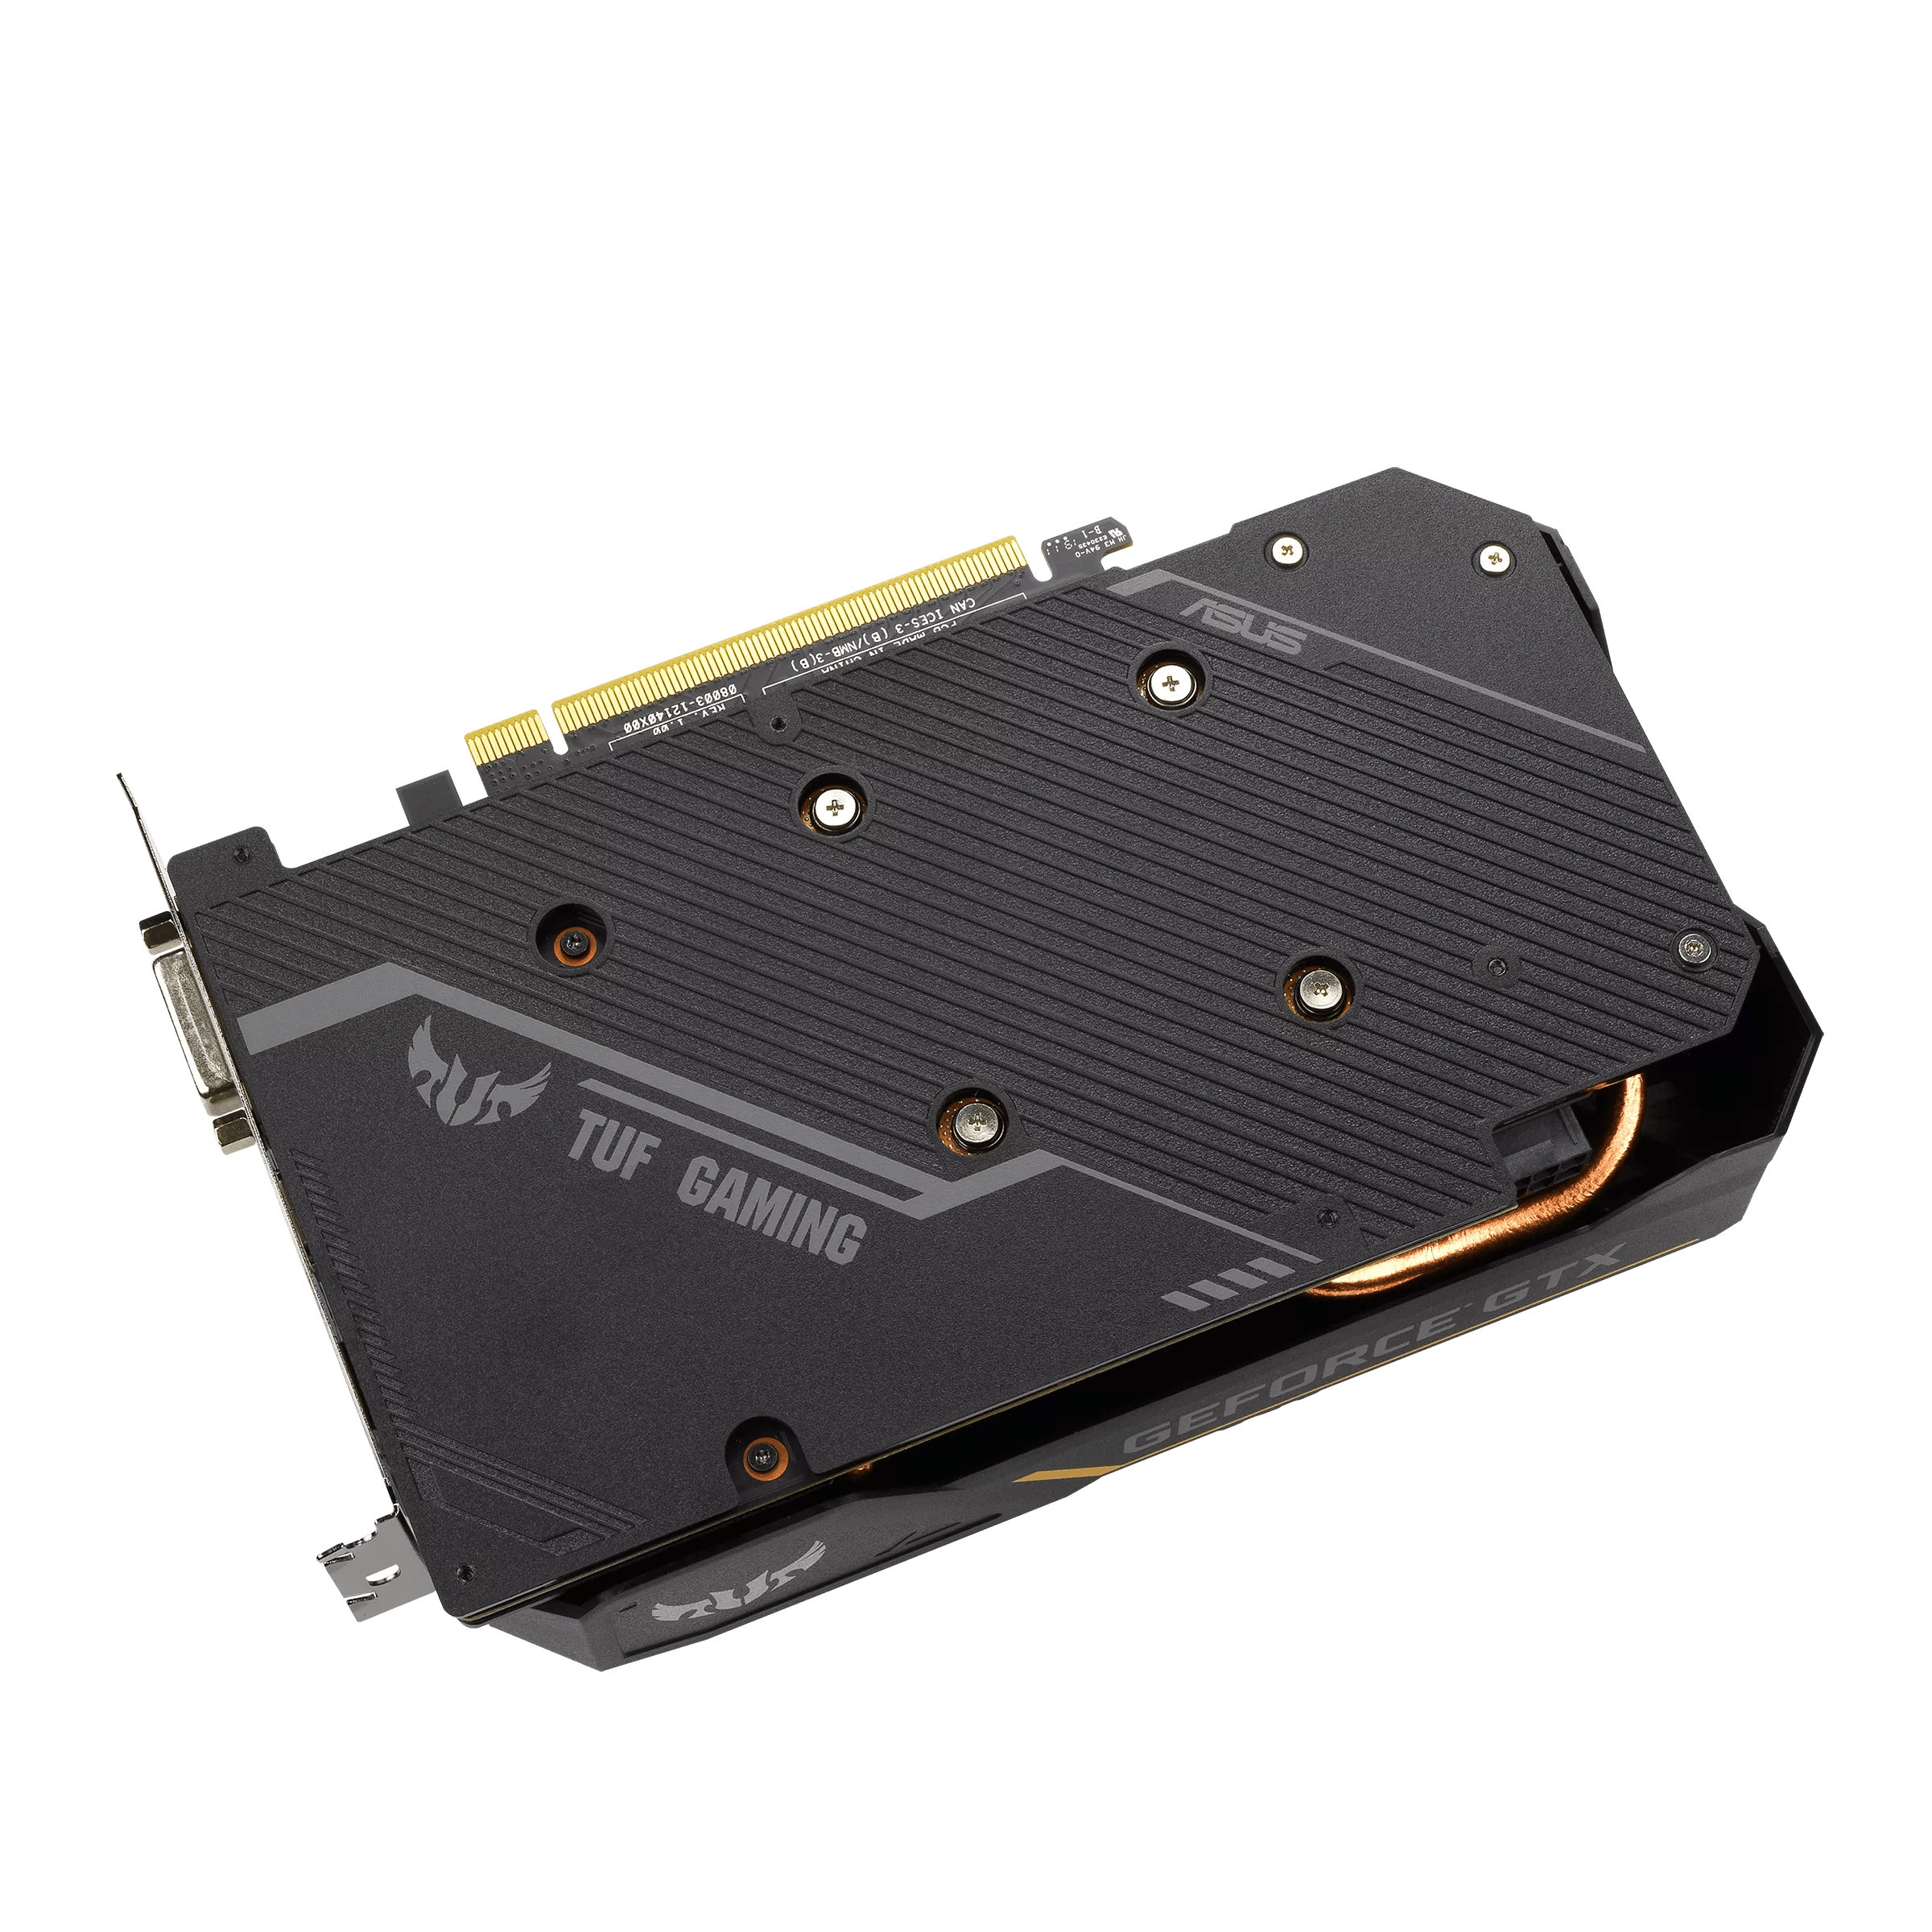 Asus TUF EVO Gaming Geforce RTX 1660 Ti OC 6GB (Open Box) - Todo Geek